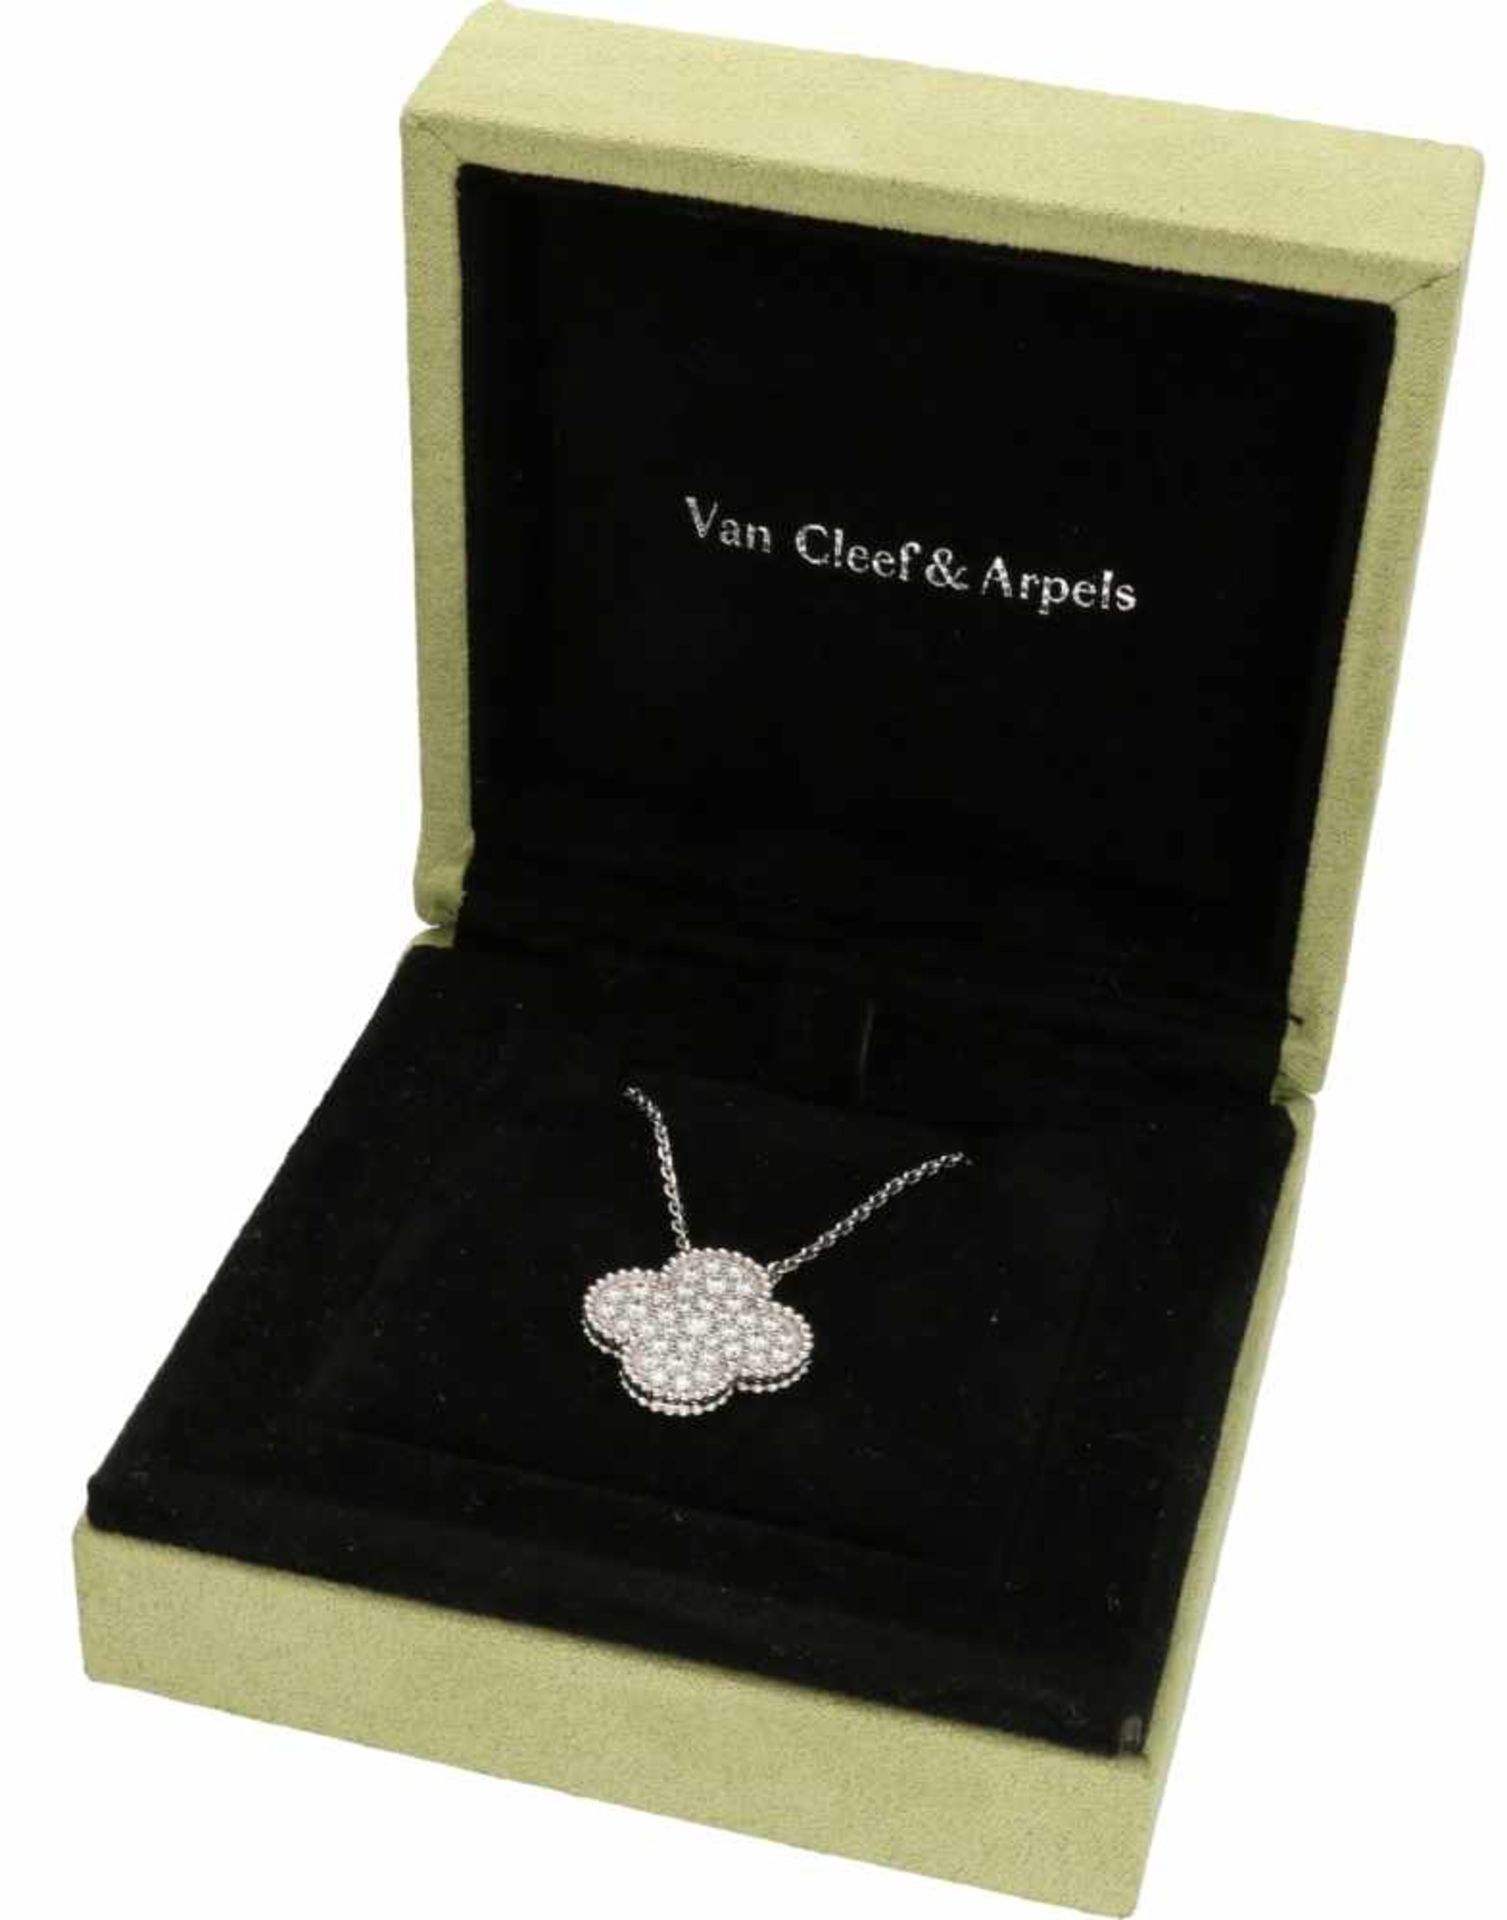 Van Cleef & Arpels necklace with Magic Alhambra pendant white gold, ca. 0.88 carat diamond - 18 ct. - Bild 5 aus 7